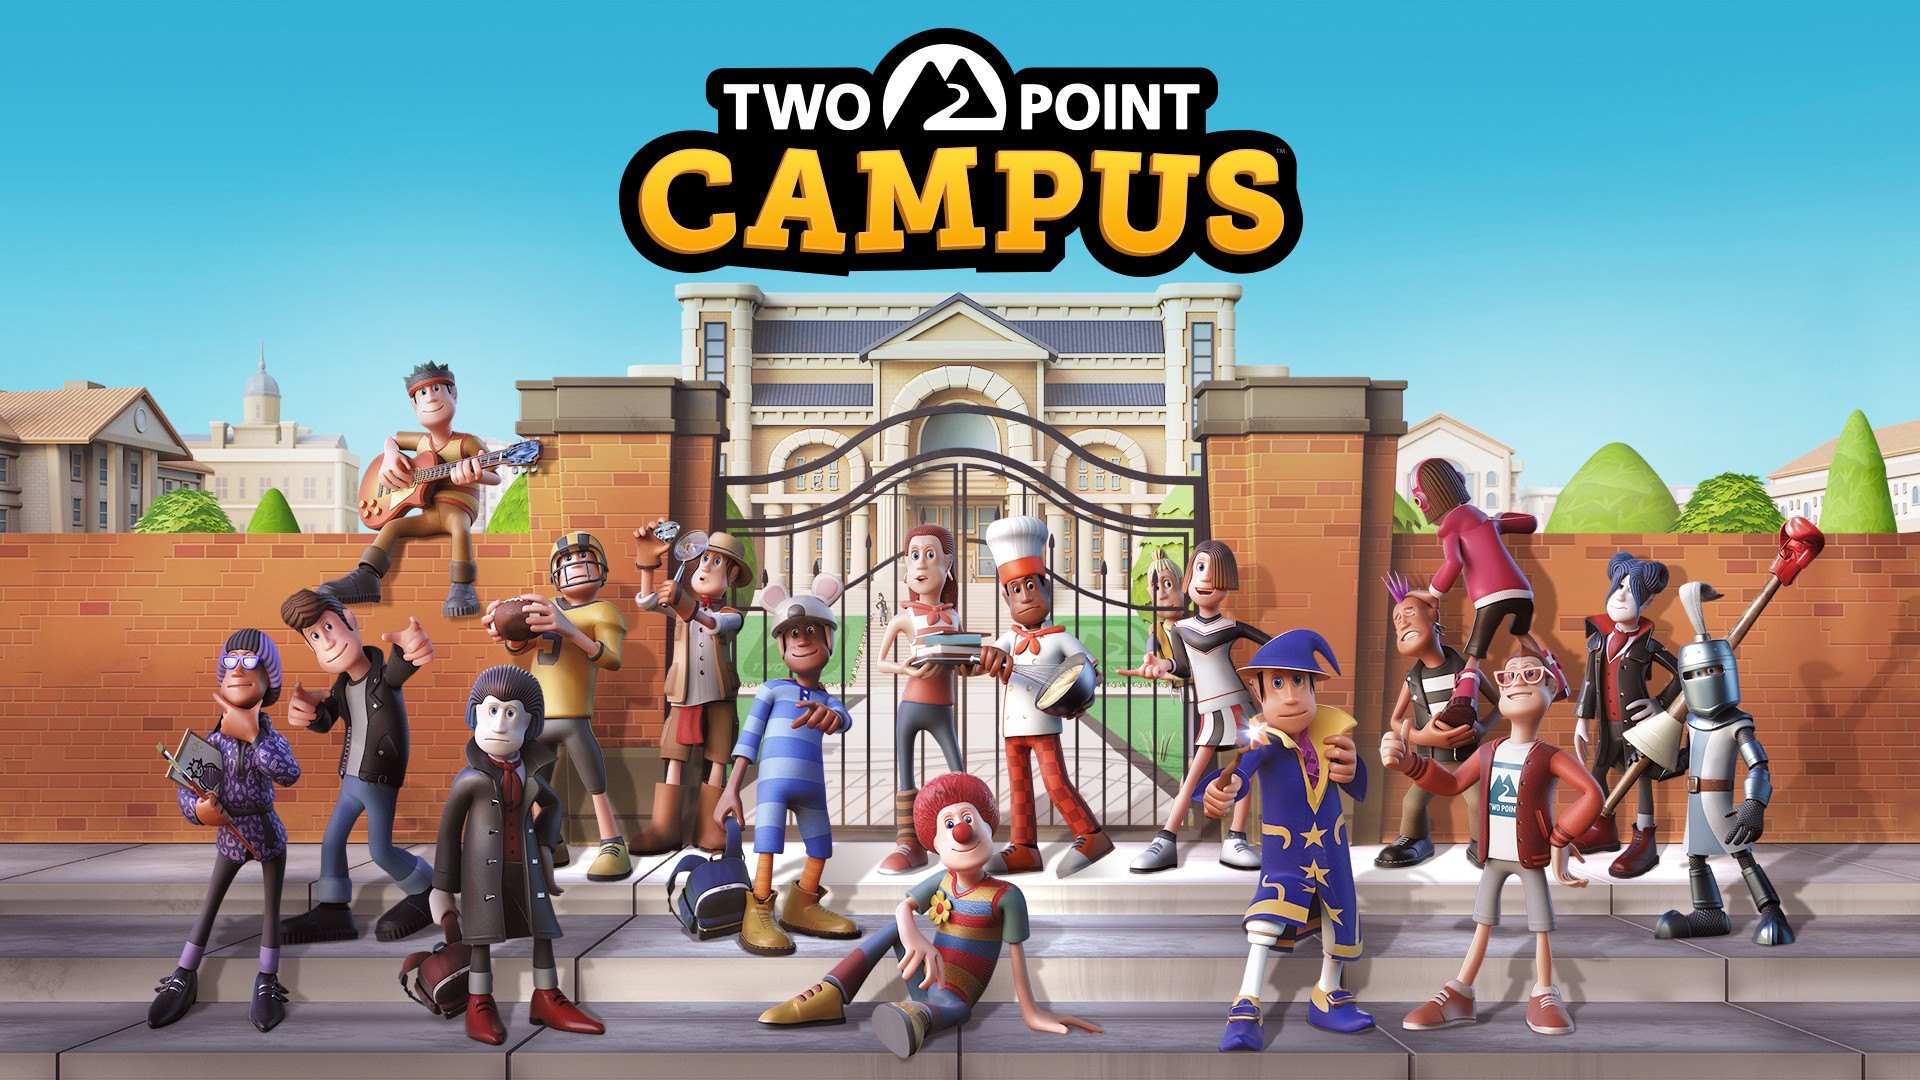 Et voici Two Point Campus, pour un retour studieux à Two Point County